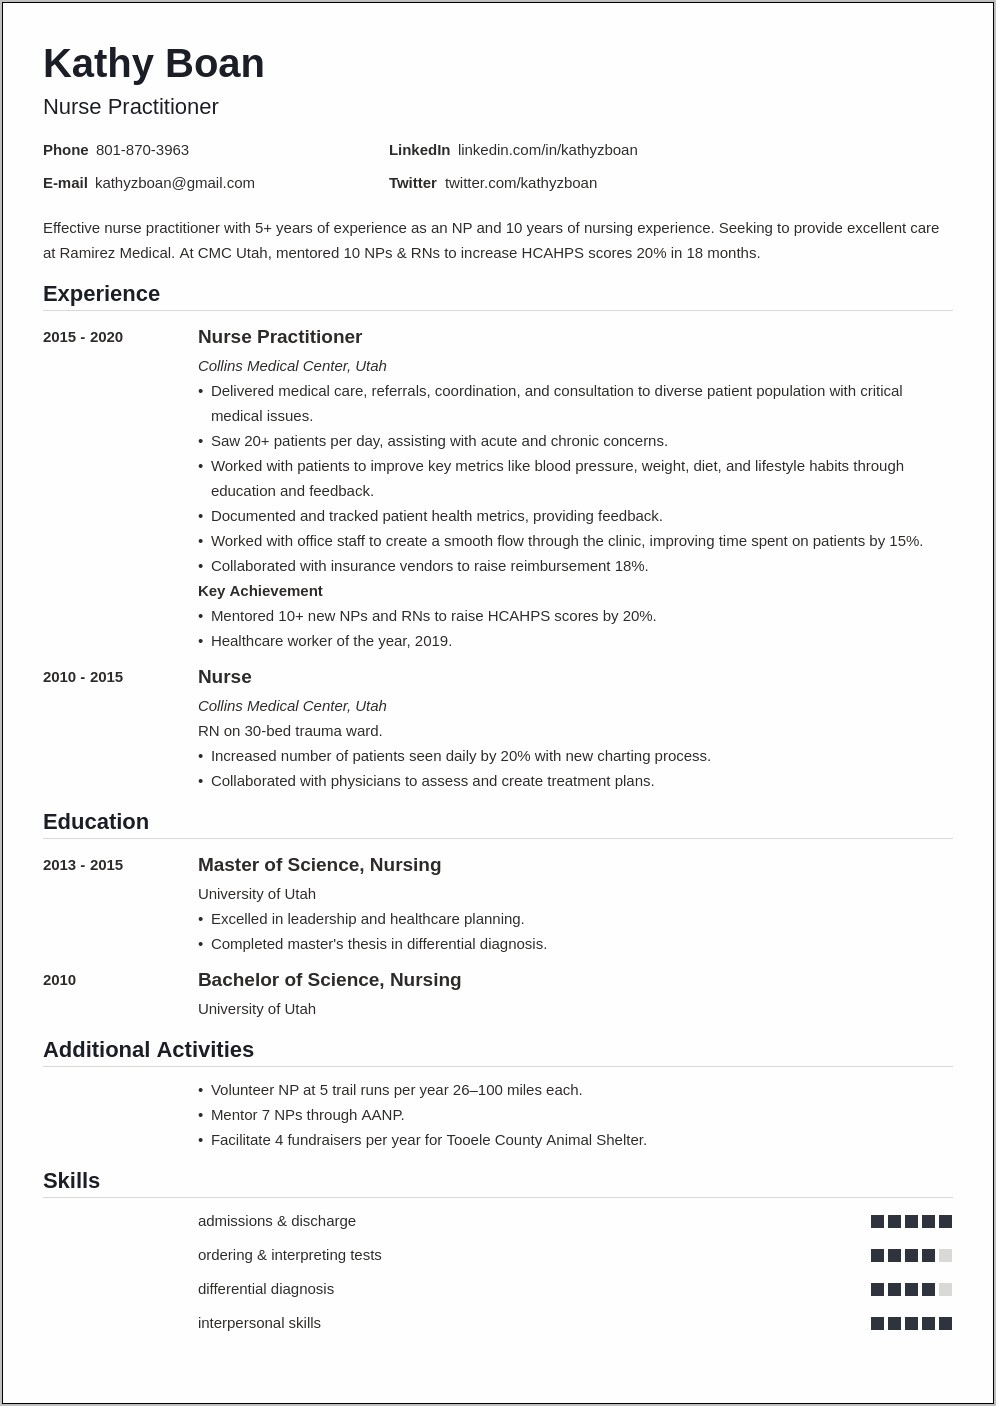 Career Summary Resume Of Nurse Practitioner